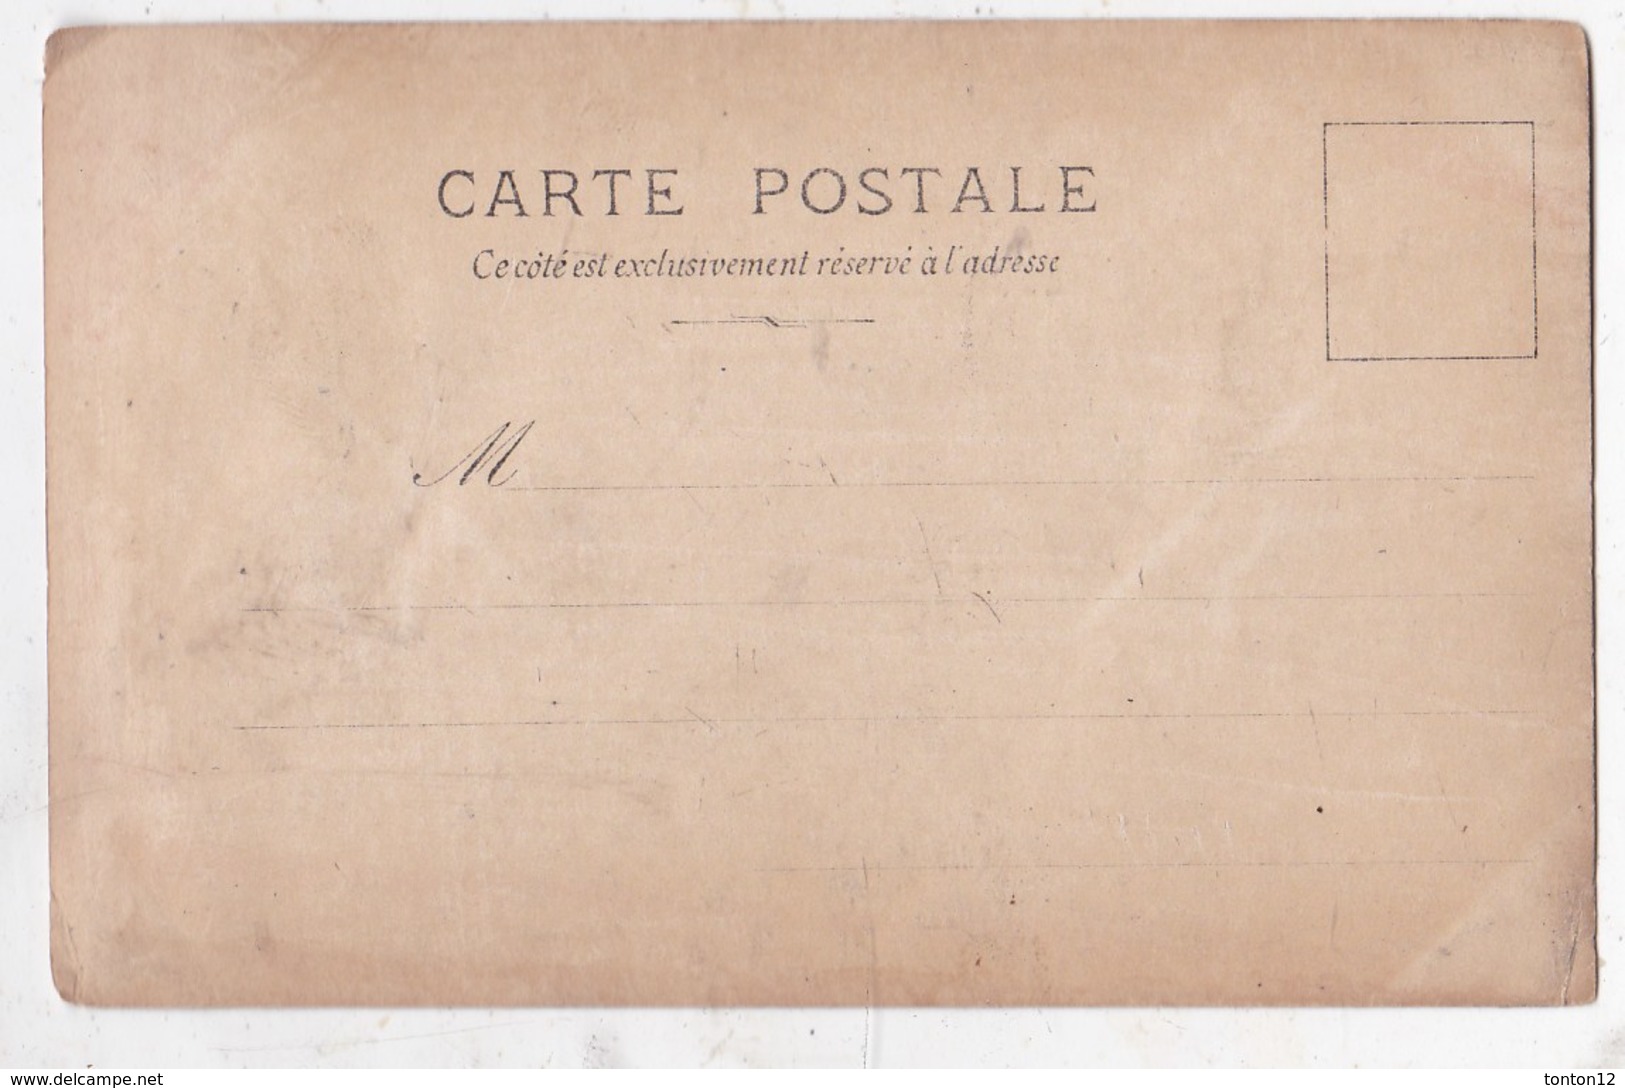 Carte Postale Artiste Cavalerie - Opera